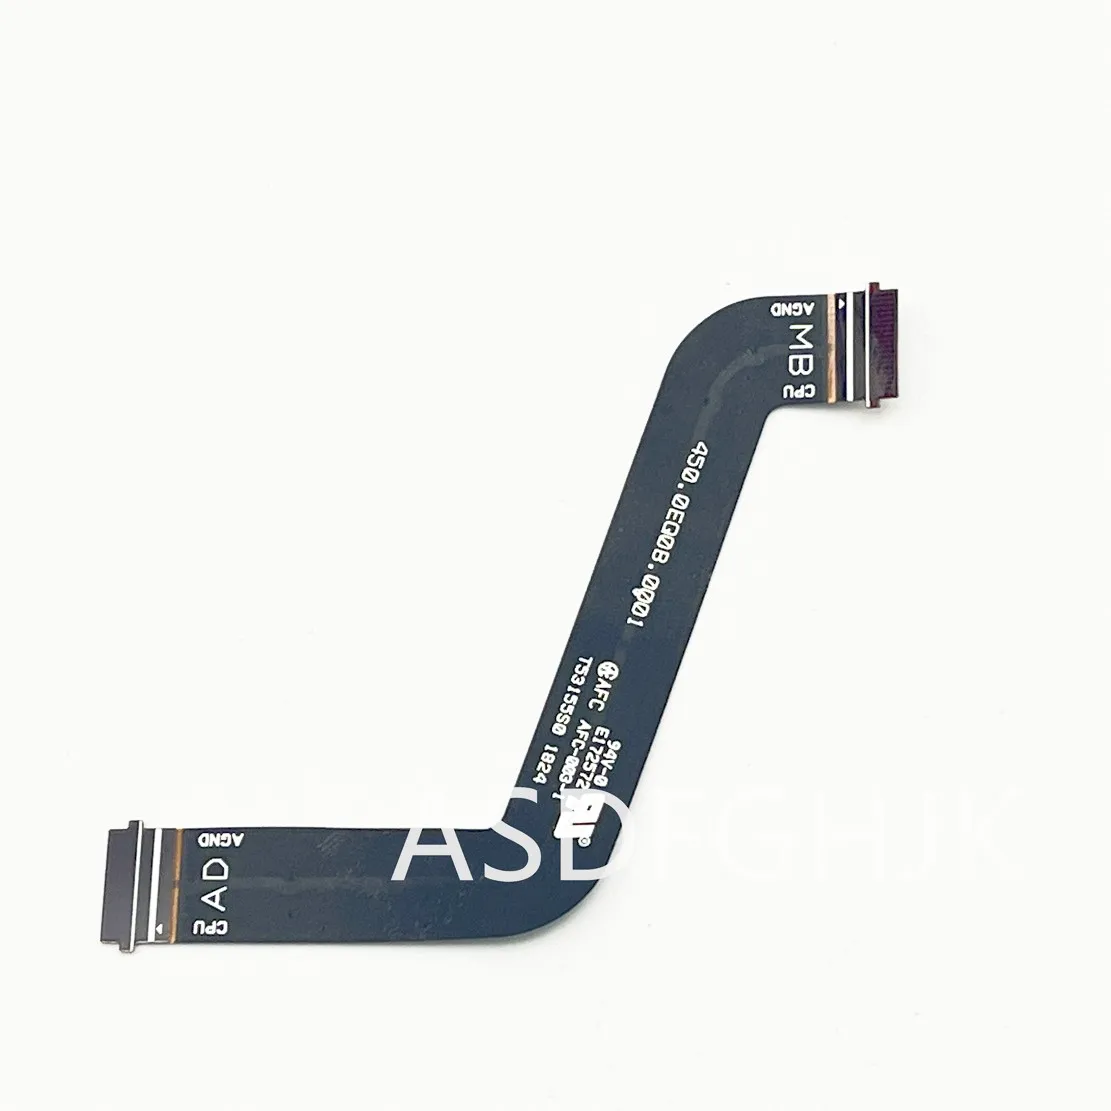 Оригинал для HP ProBook x360 440 G1 USB Аудио плата 17B16-1 кабель FFC 450.0EQ0B.0001 Тест Хорошее Бесплатная доставка